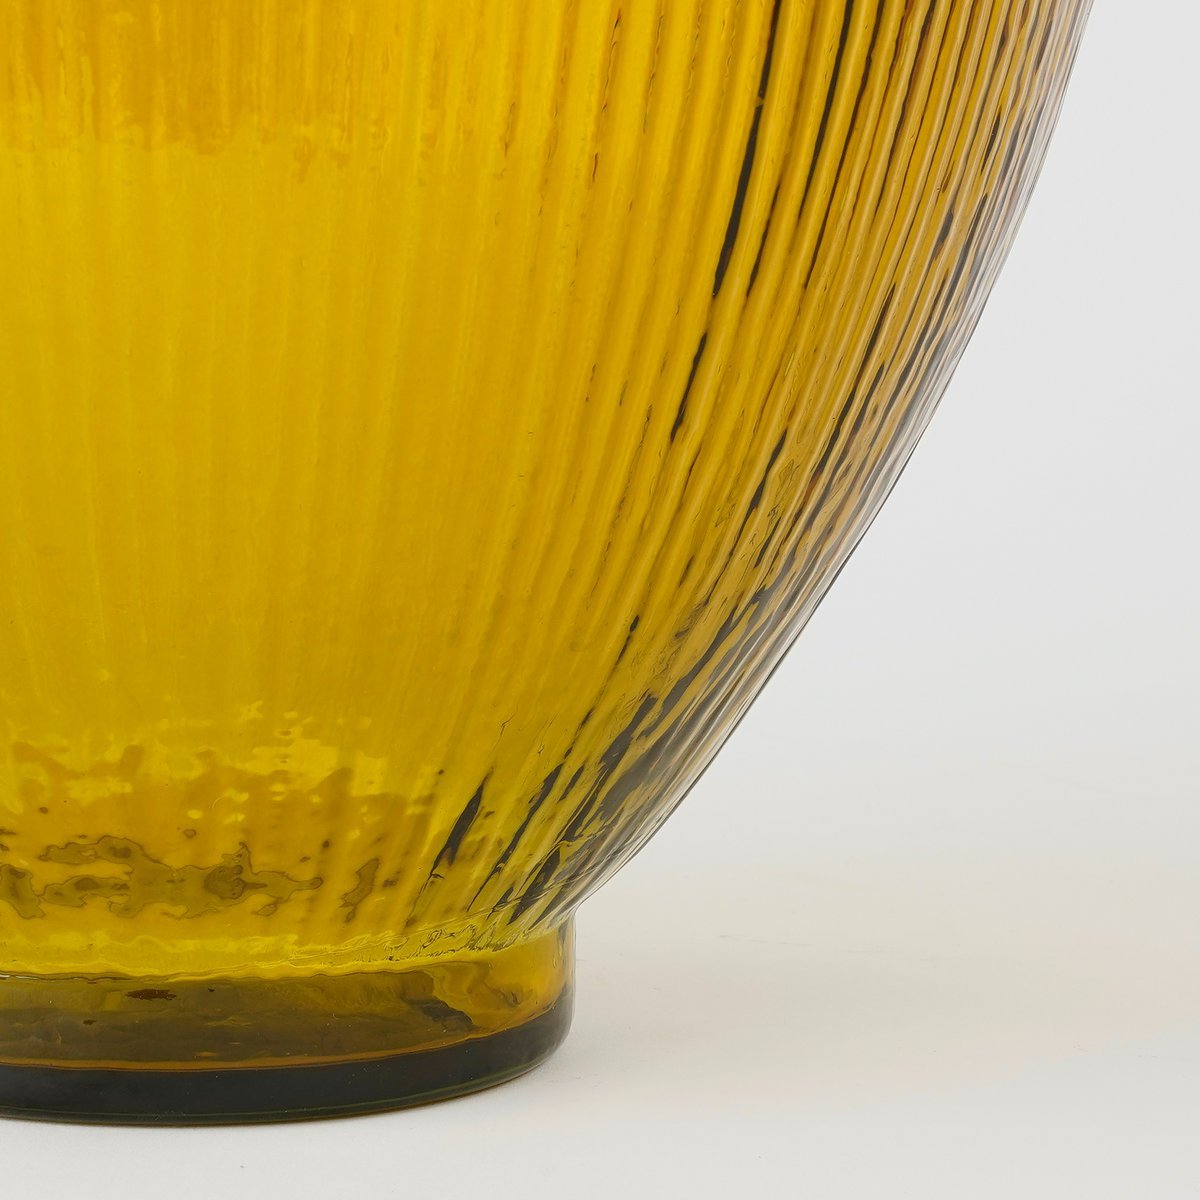 Firenza Flaschenvase – H59 x Ø29 cm – recyceltes Glas – Ocker